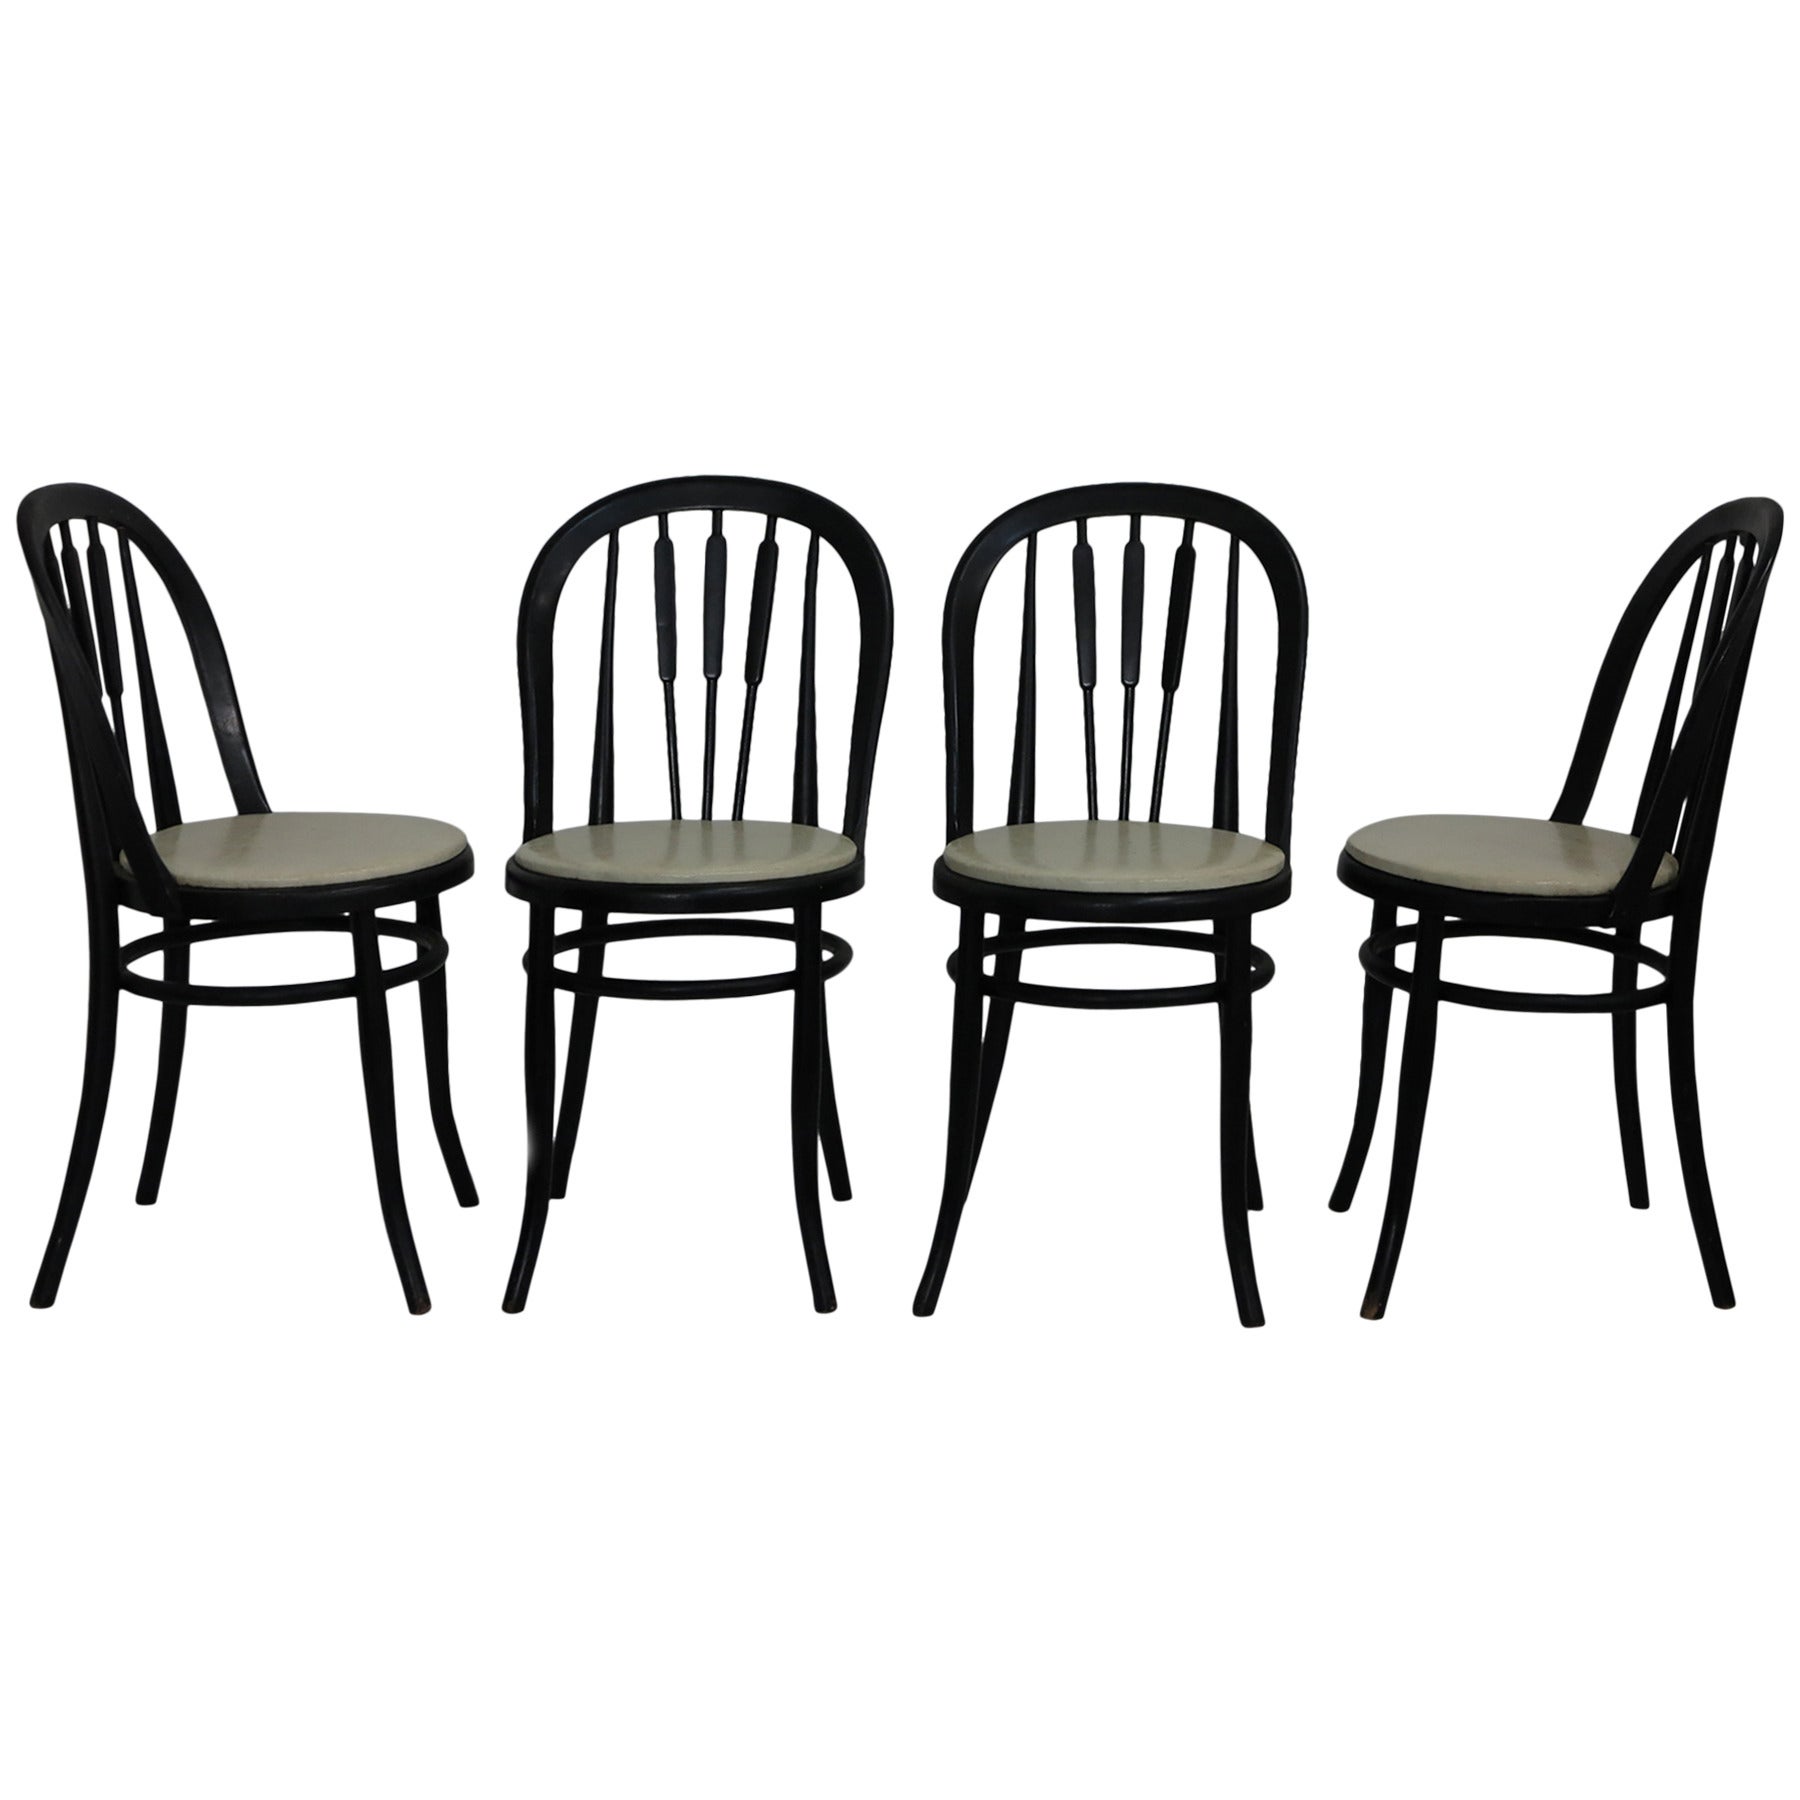 Wiener Werkstätte Four Cafe Dining Chairs